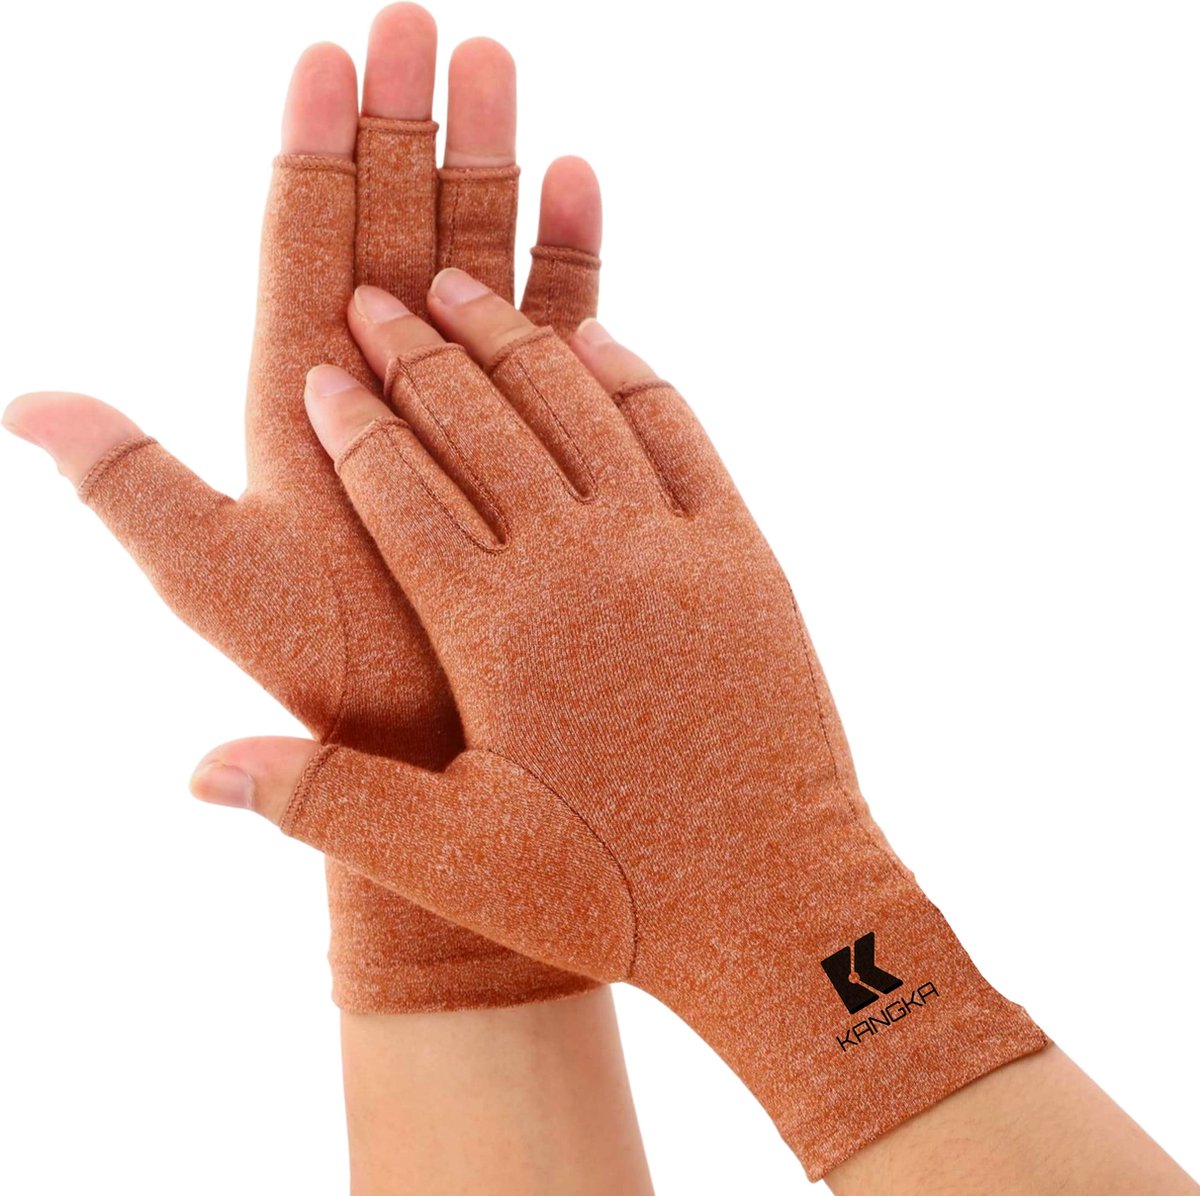 KANGKA Reuma Handschoenen - Compressie Handschoenen Maat L - voor Artrose, Reuma, Artritis, RSI, CTS - Unisex - Bruin-kangka 1